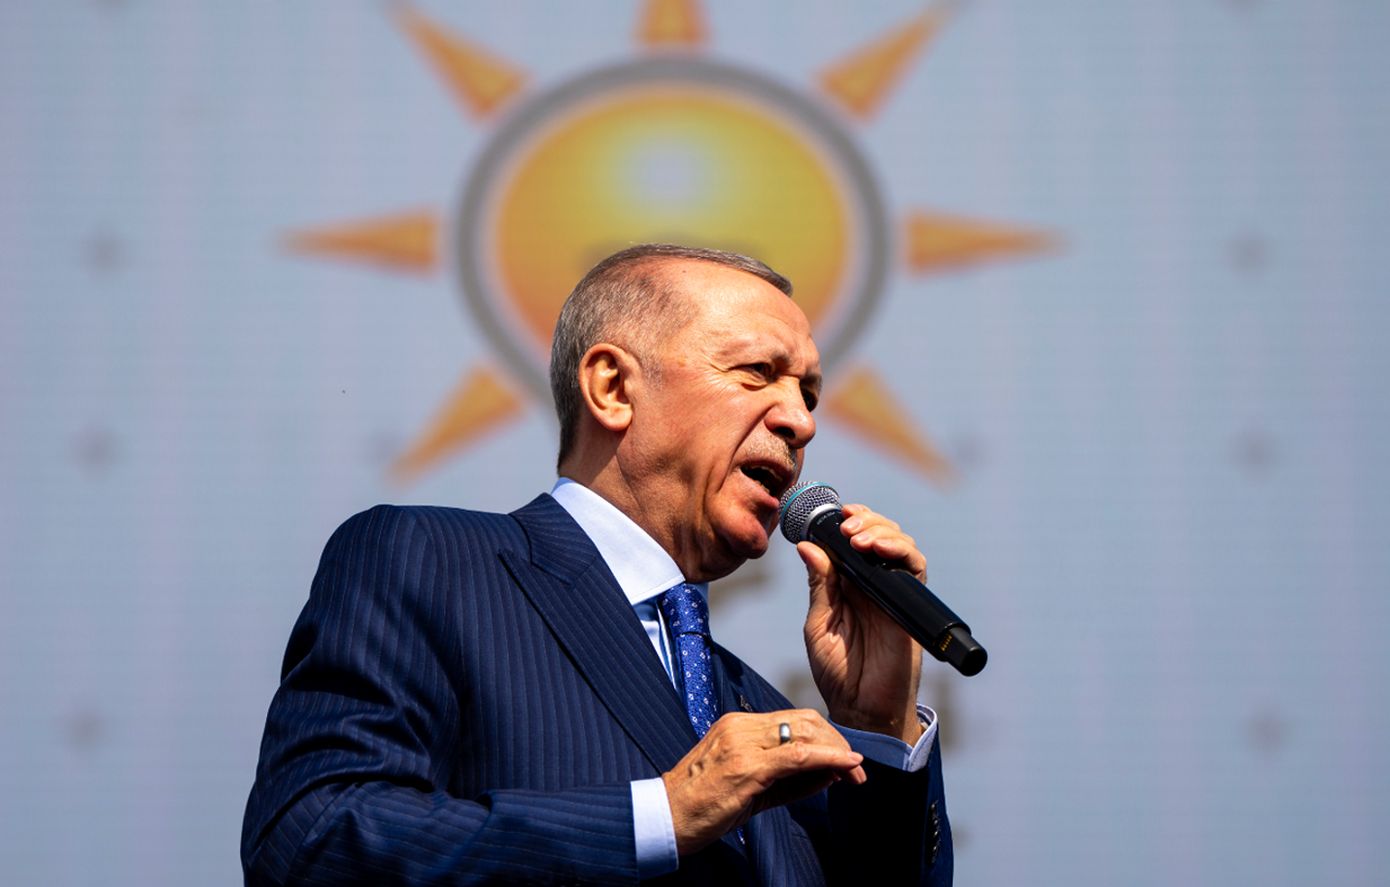 Ερντογάν: Πραγματοποιήσαμε το επί 80 χρόνια όνειρό μας και ξανανοίξαμε την Αγία Σοφία για λατρεία, δόξα στον Αλλάχ